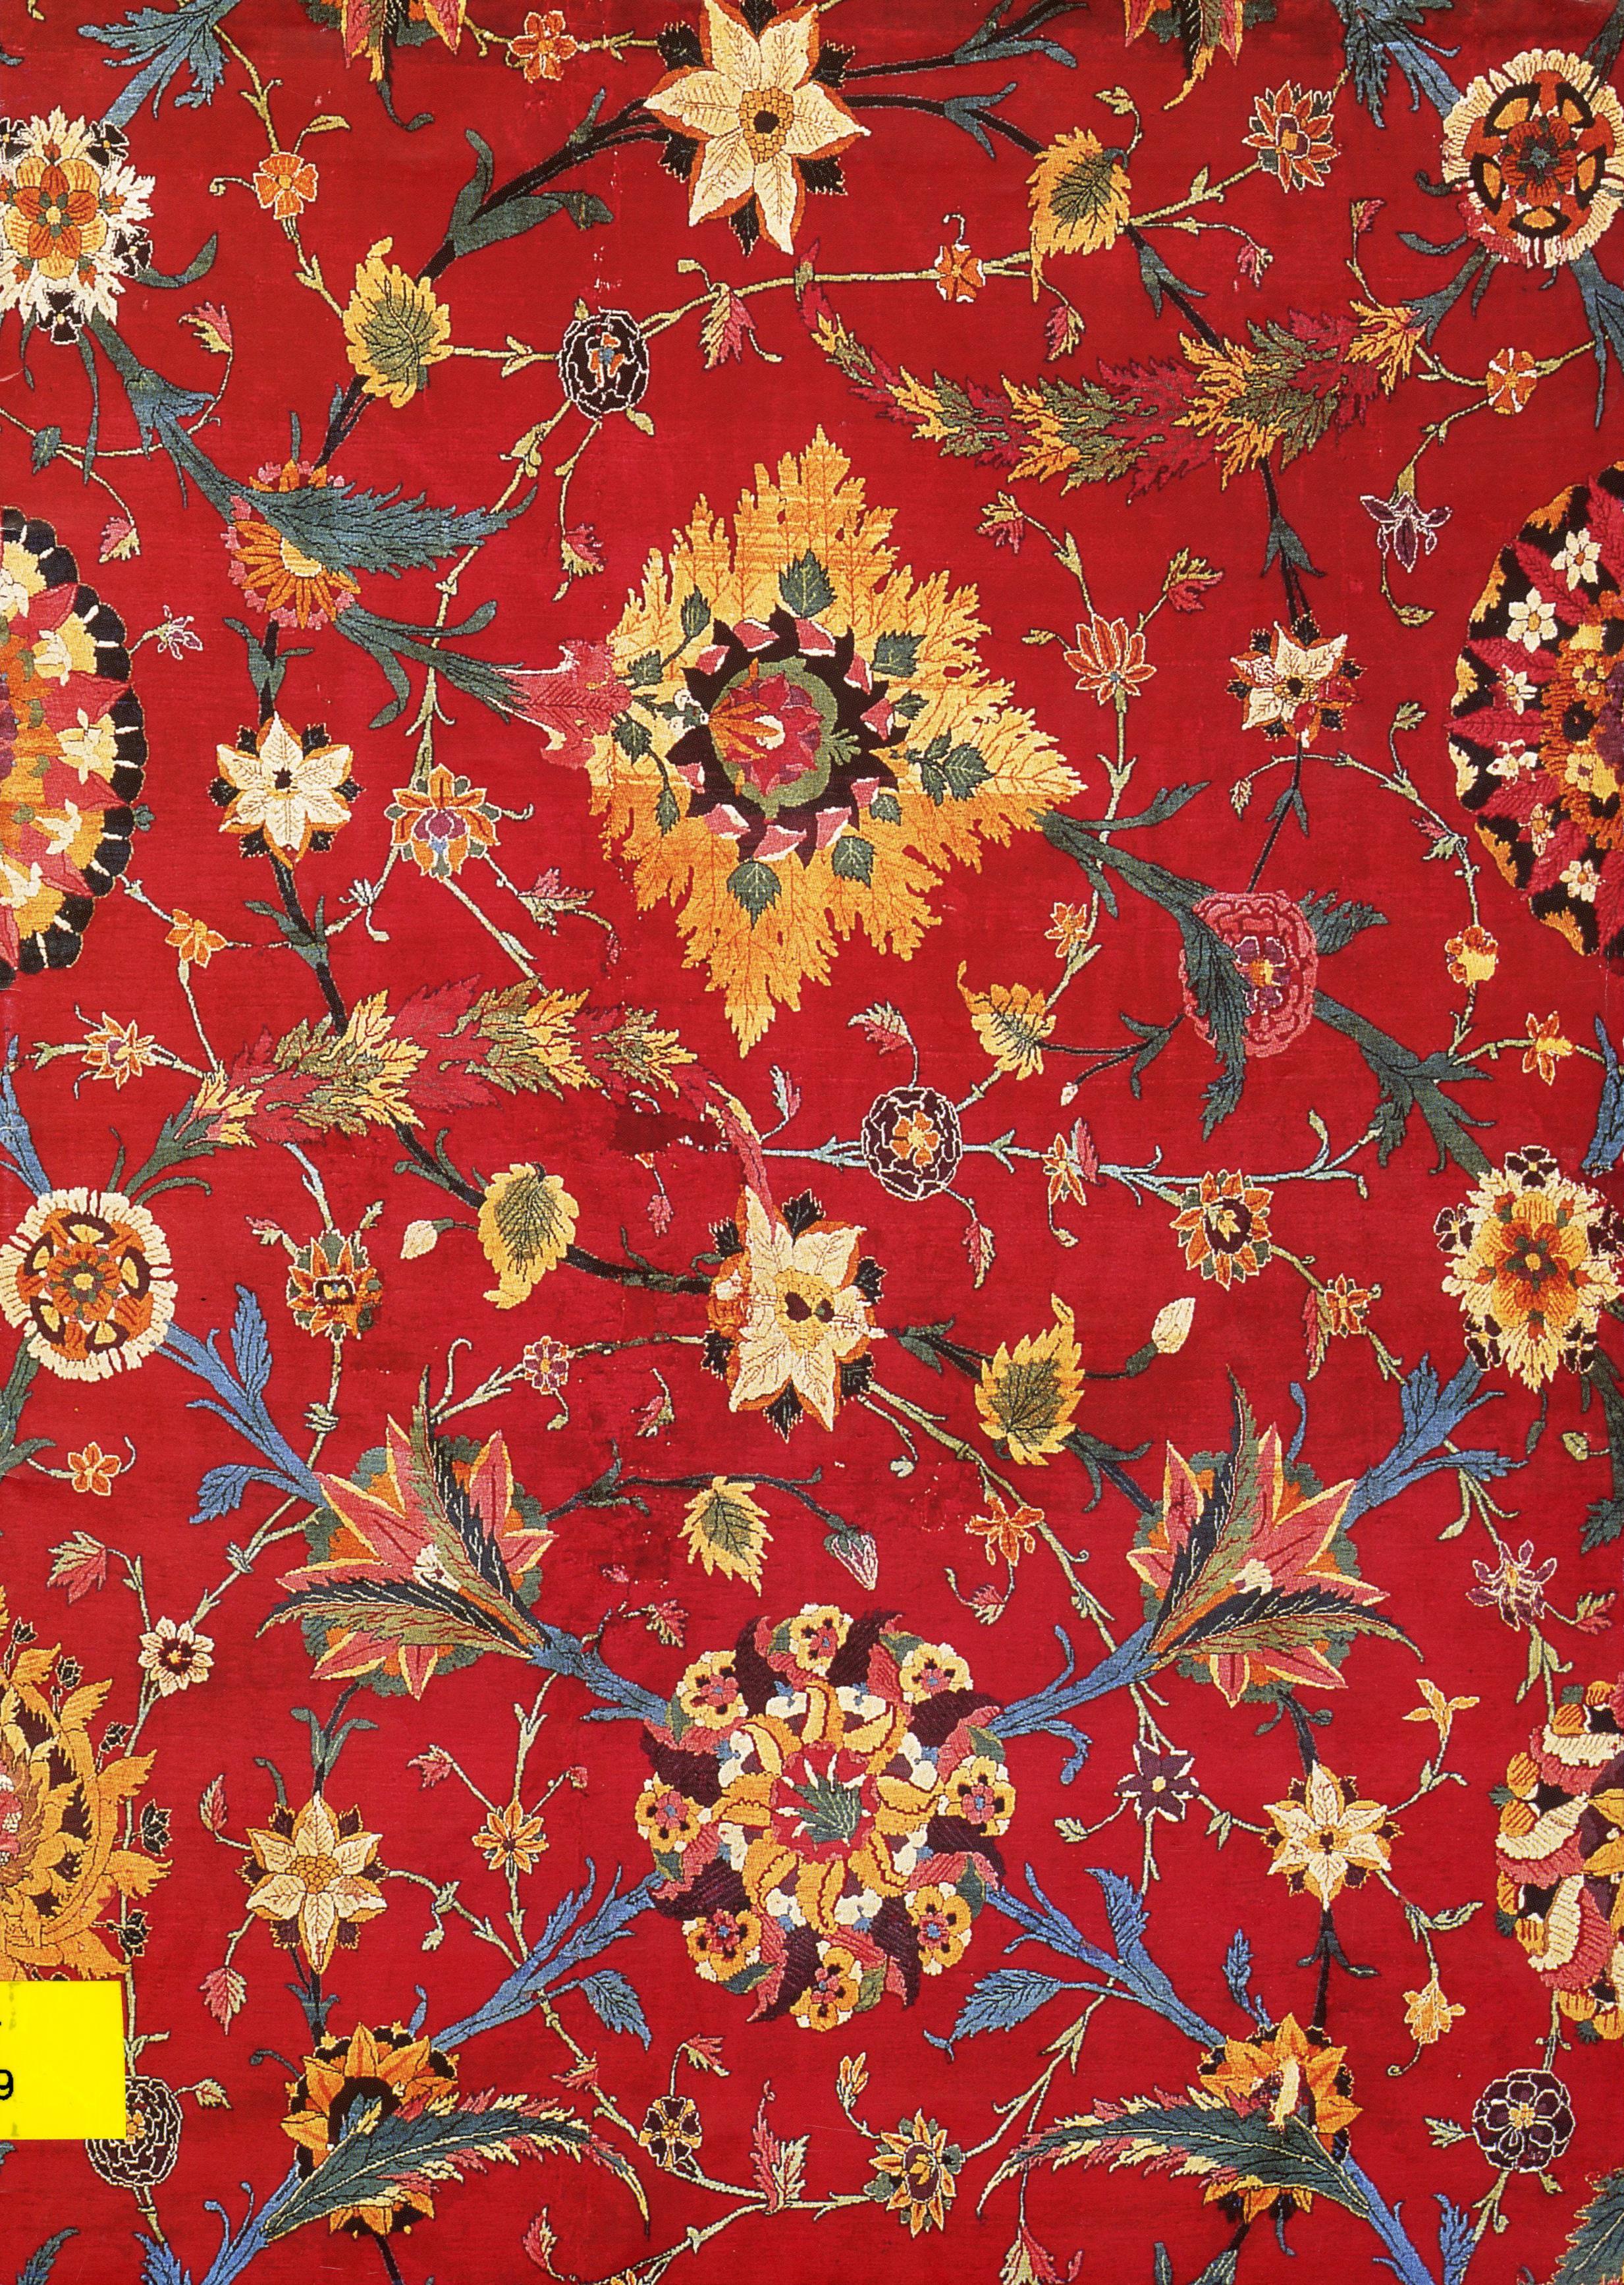 Obra de Arte em Foco. Um Tapete da Índia Mogol da Colecção Calouste Gulbenkian / Work of Art in Focus. A carpet from Mughal India in the Calouste Gulbenkian Collection